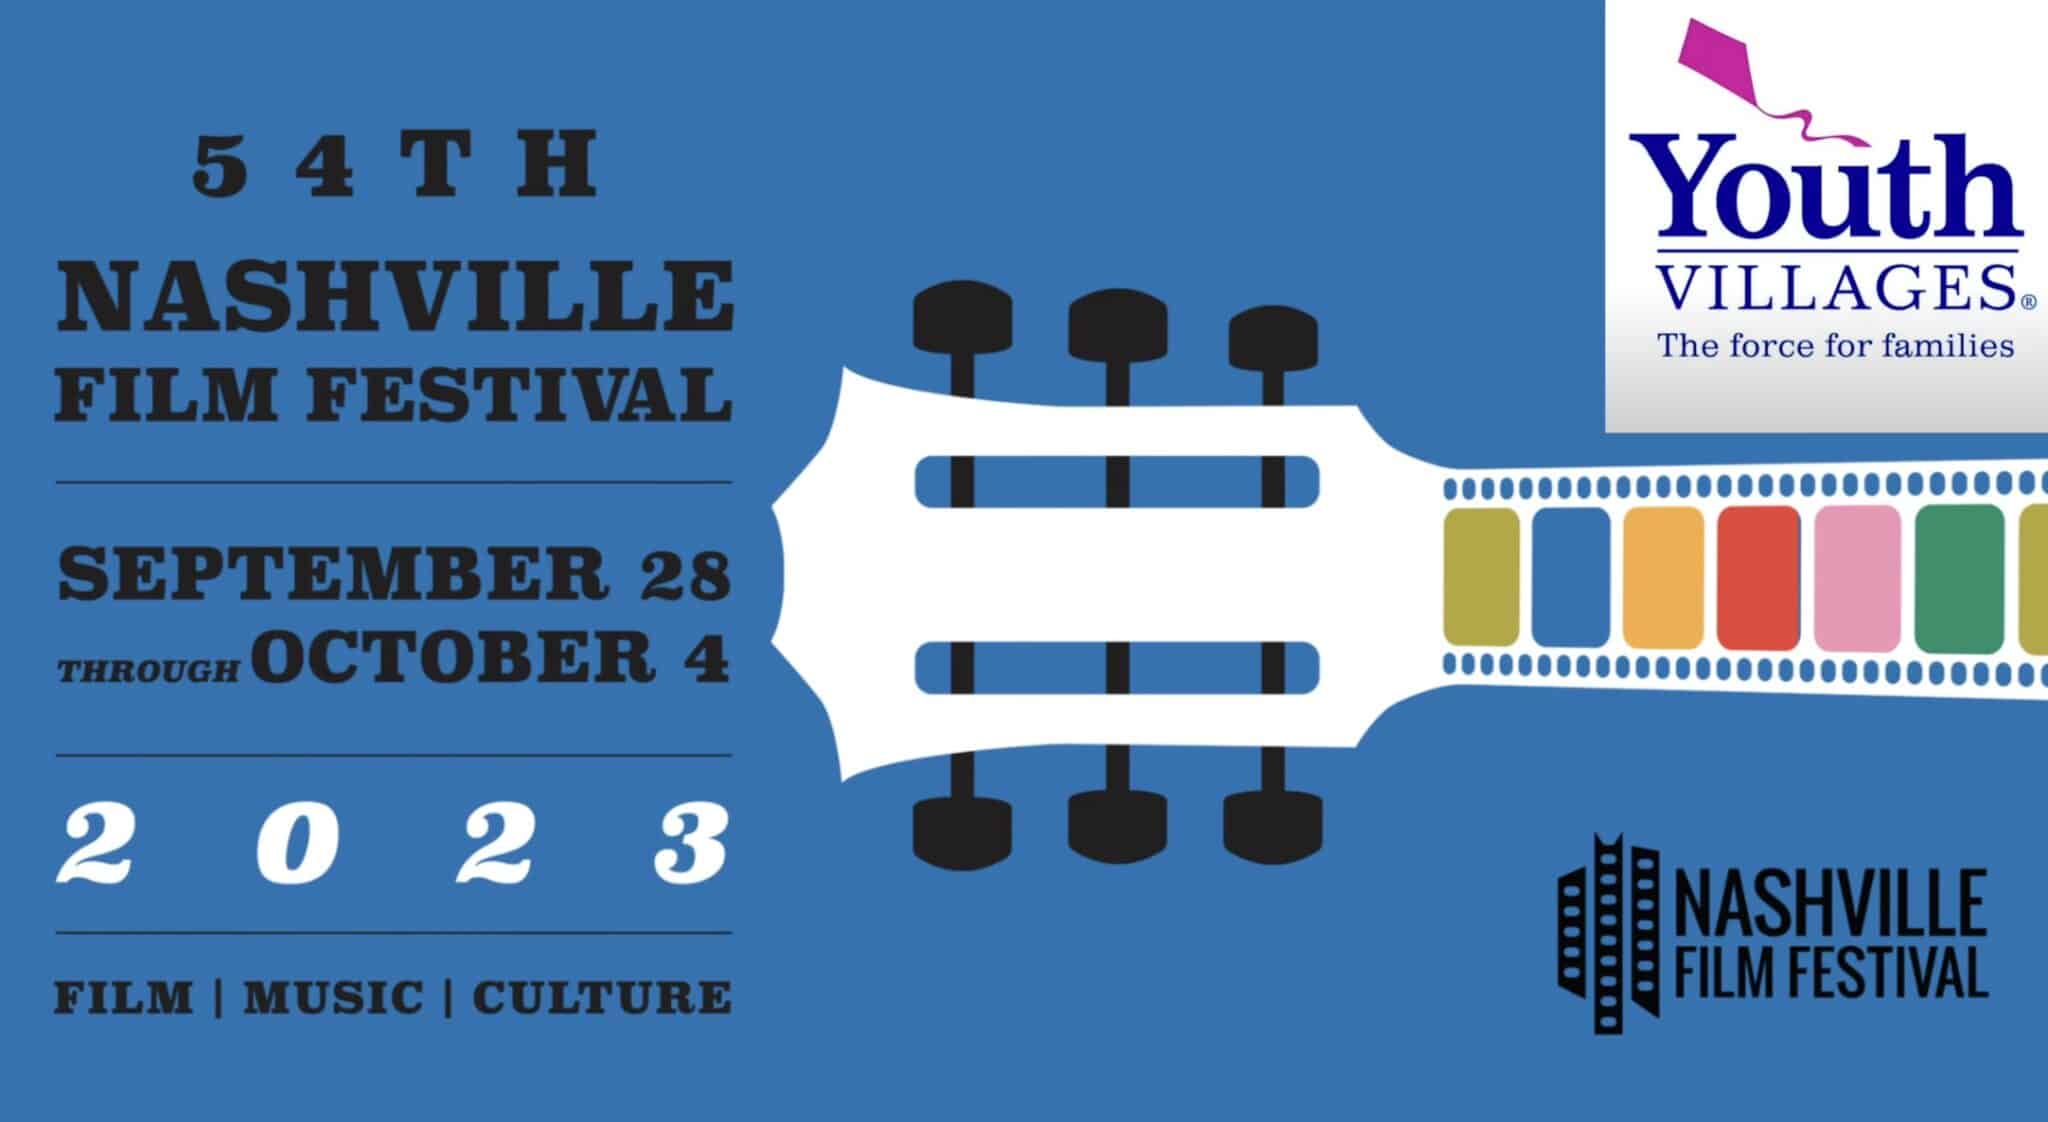 Nashville Film Festival_Youth Villages